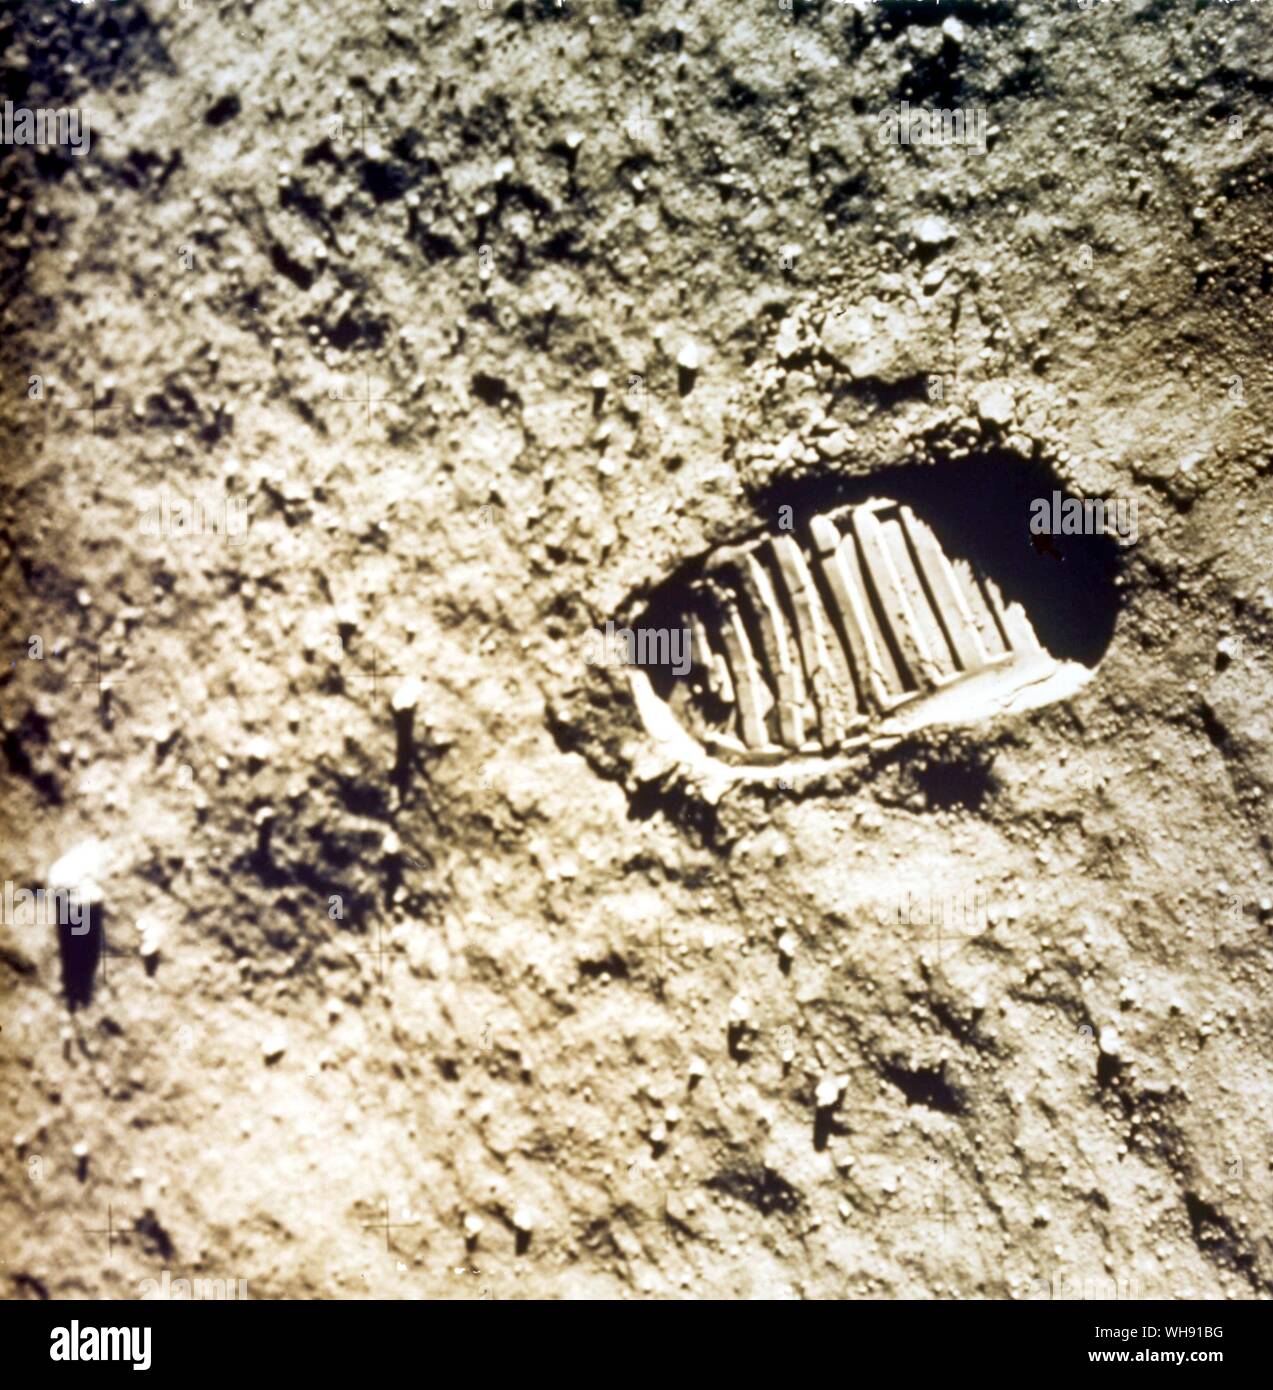 Spazio - Astronaut impronta sulla superficie lunare, 1969. Missione Apollo 11. Foto Stock